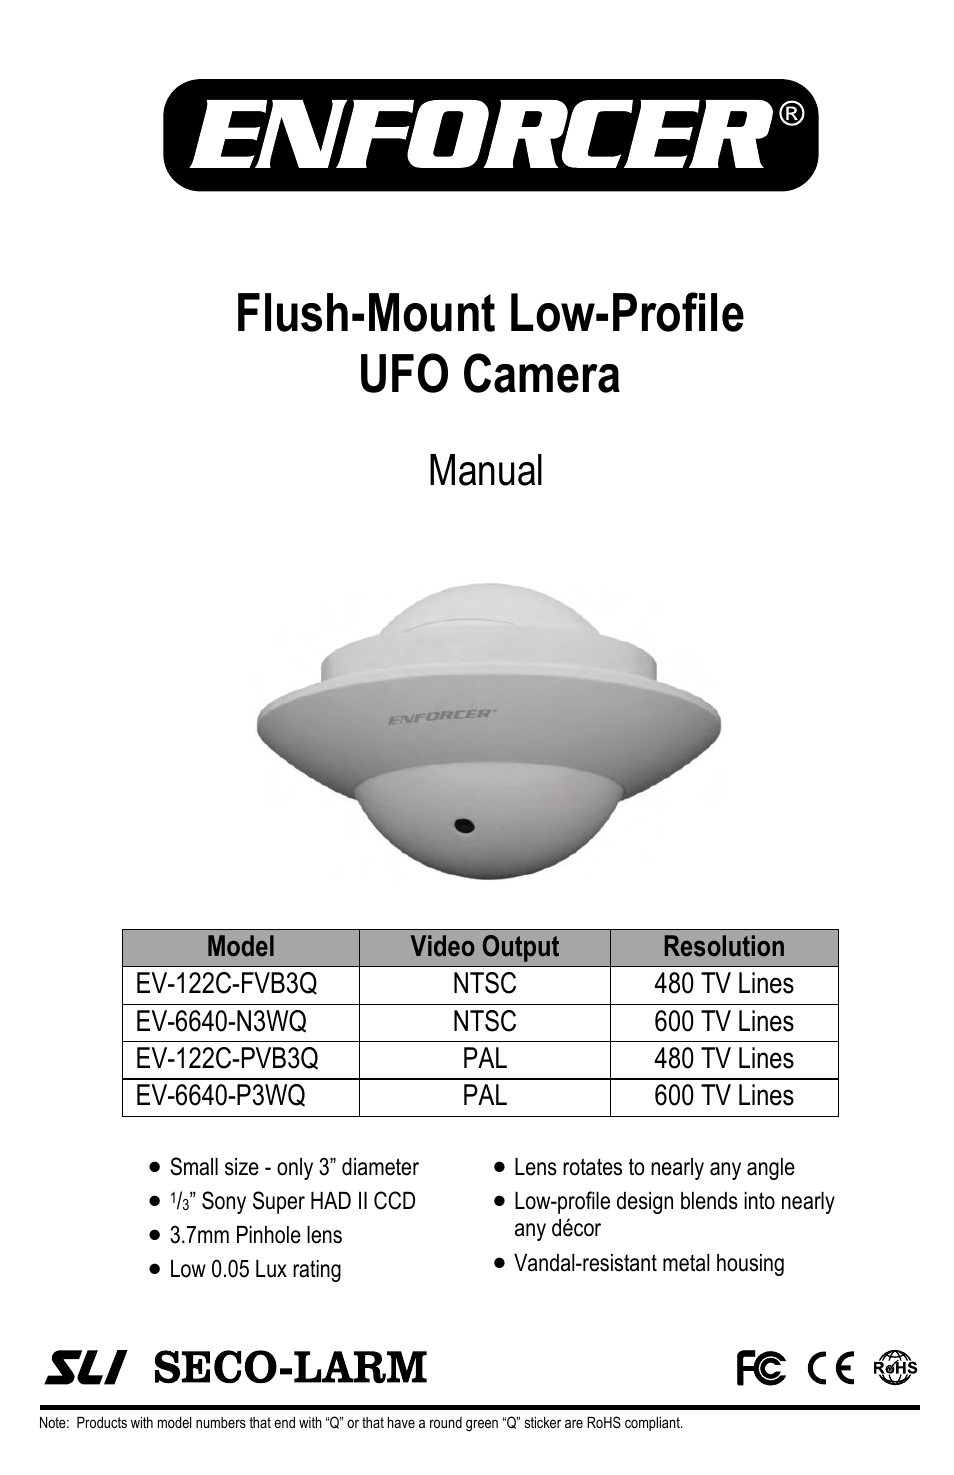 Flush-Mount Low-Profile UFO Camera EV-6640-N3WQ